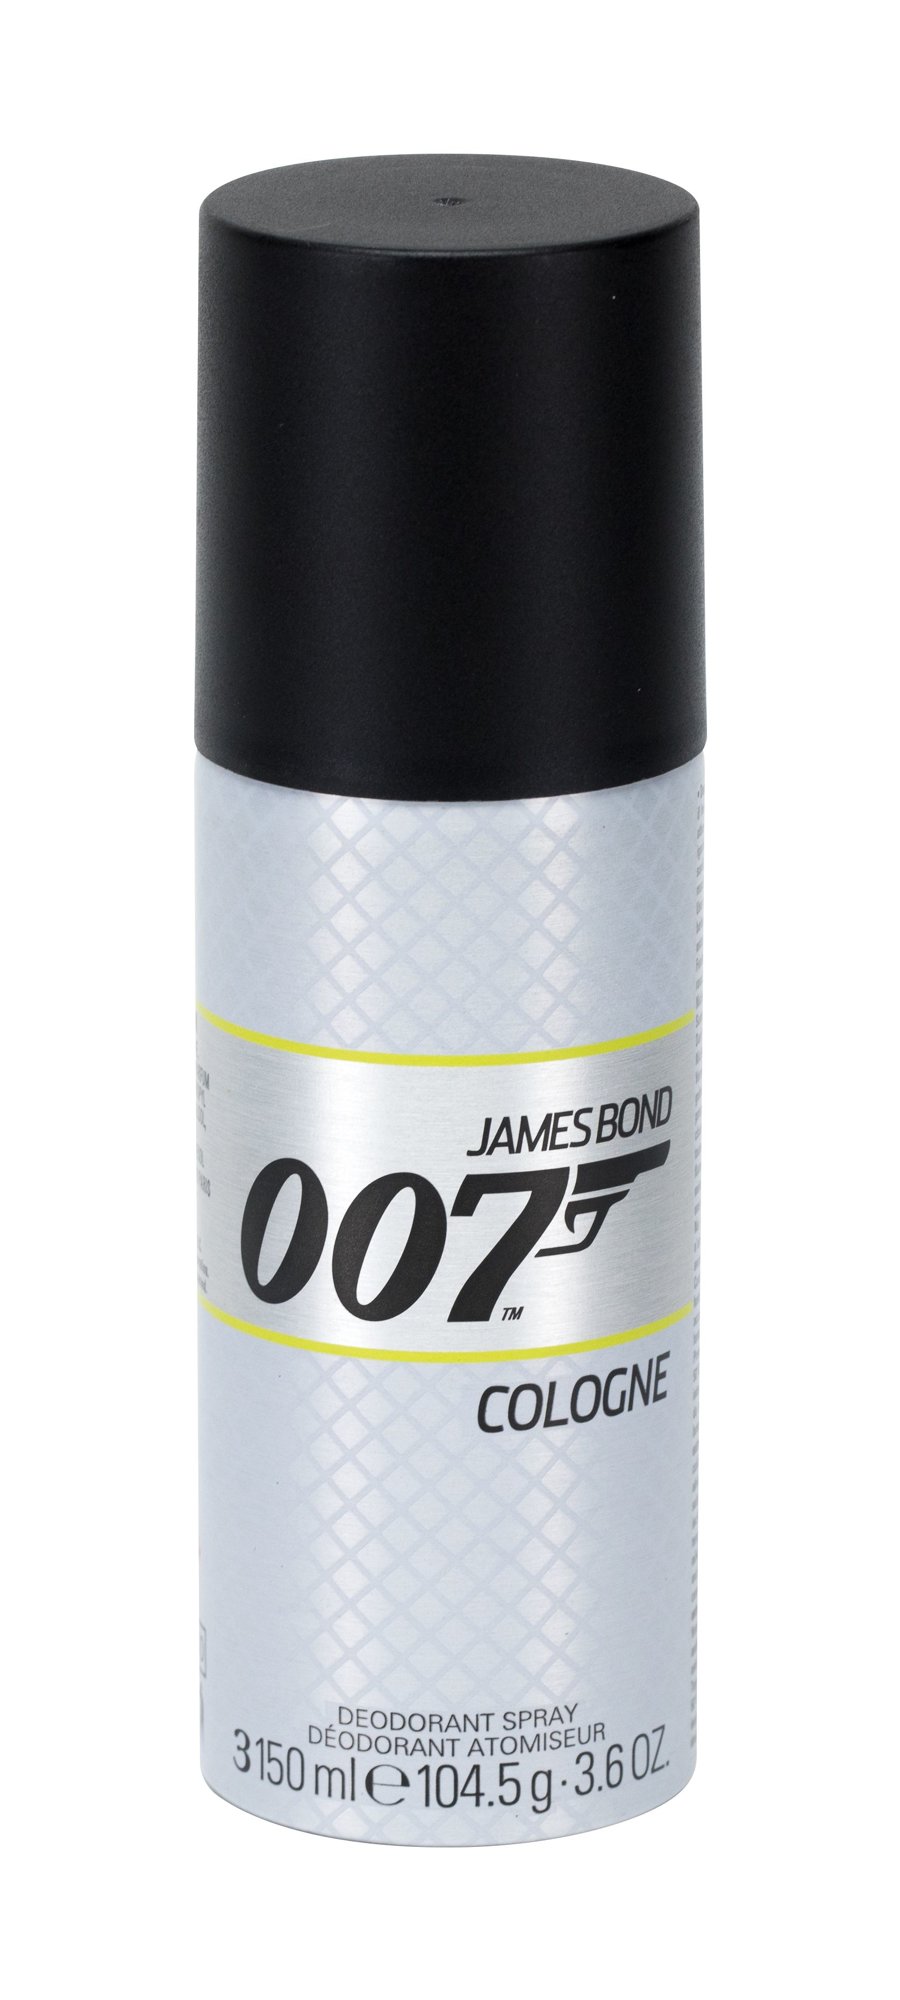 James Bond 007 James Bond 007 Cologne 150ml dezodorantas (Pažeista pakuotė)